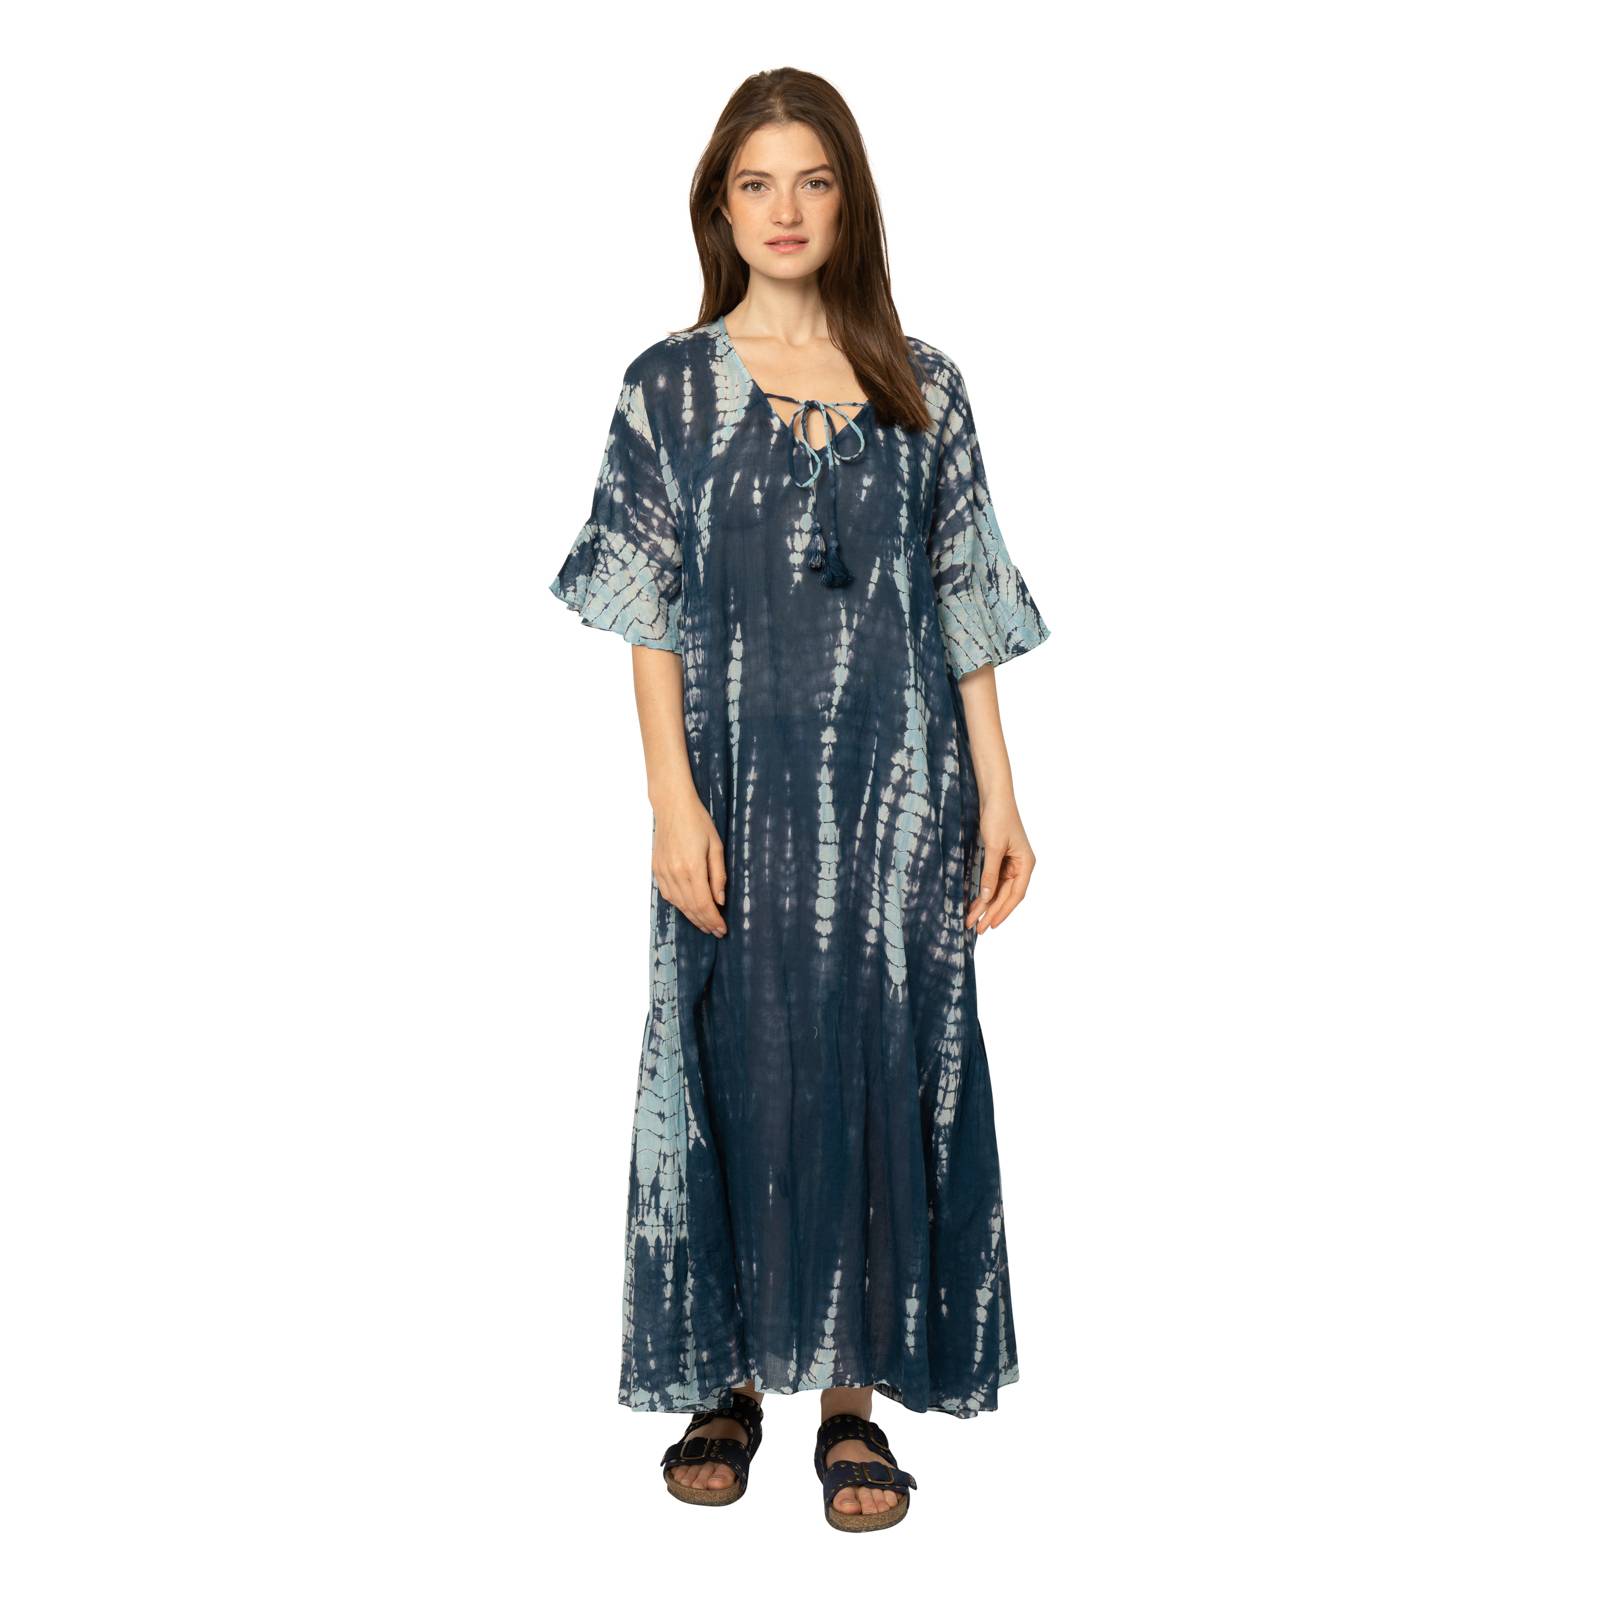 Robes Elsa Dress T&d 100% Coton Ethnique VR3405 NAVY BLUE